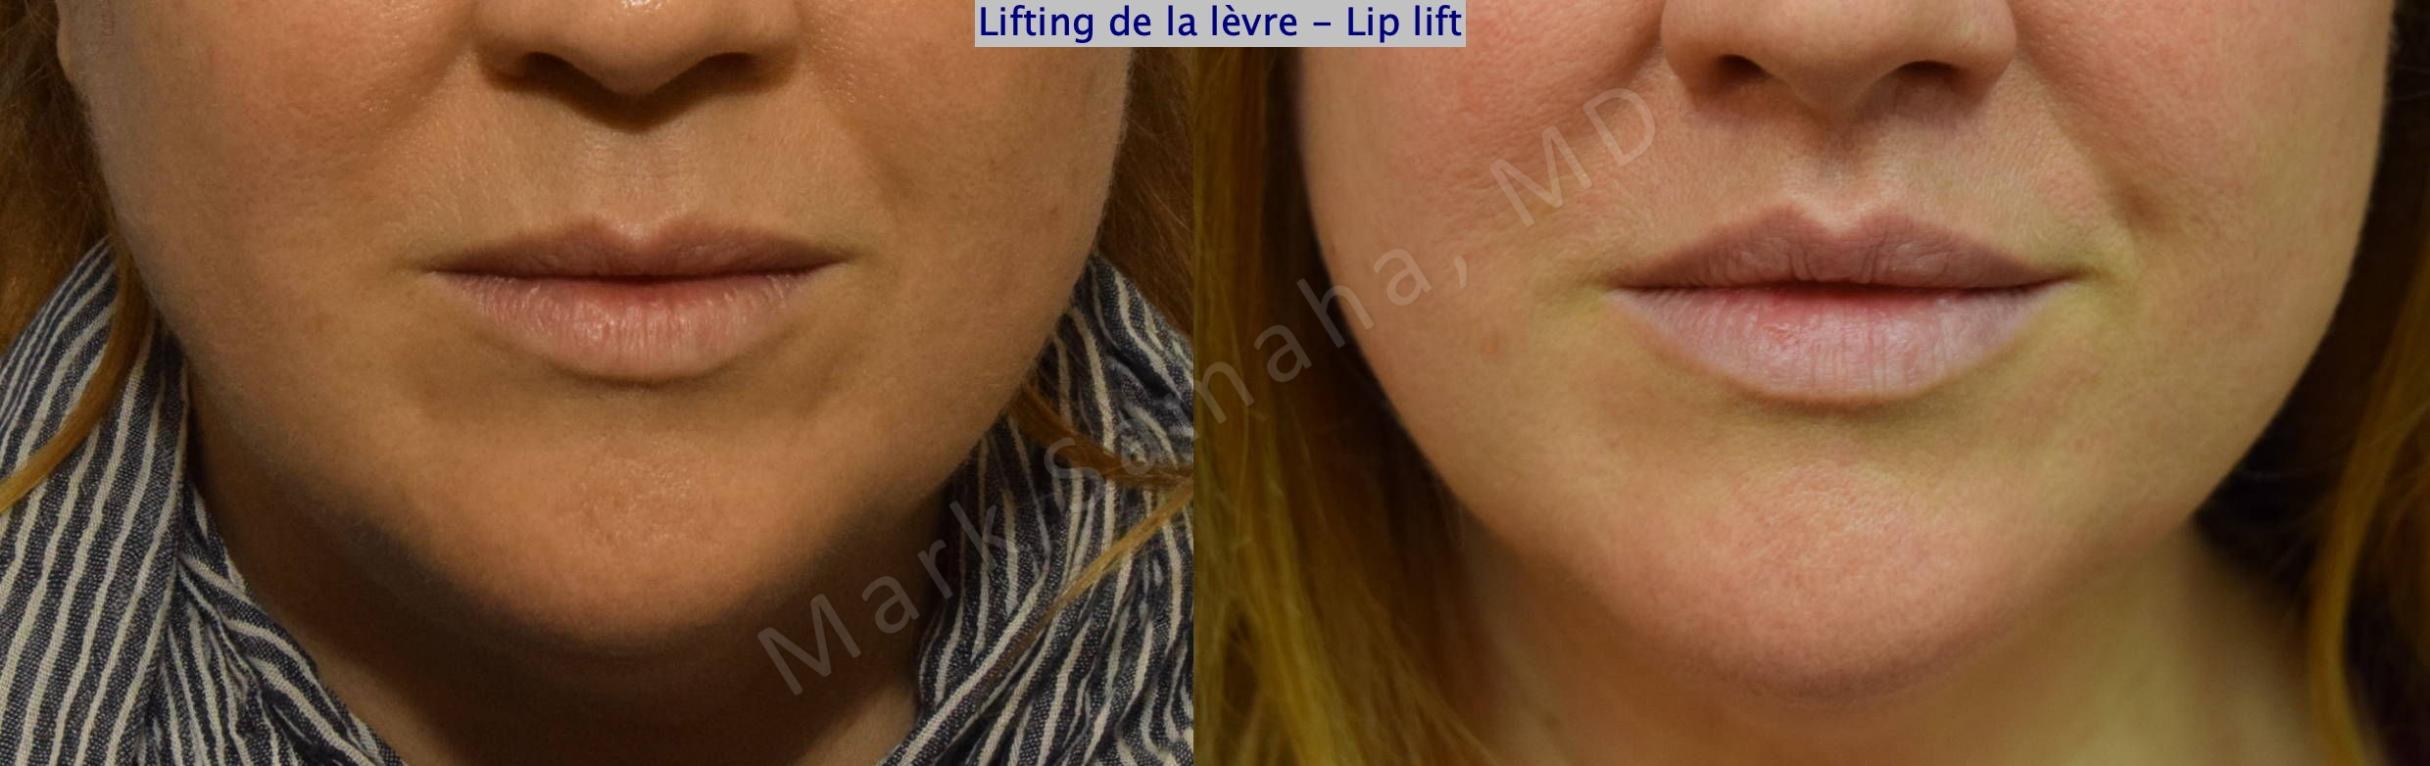 Before & After Lip Lift / Lifting de la lèvre supérieure Case 173 Front View in Mount Royal, QC